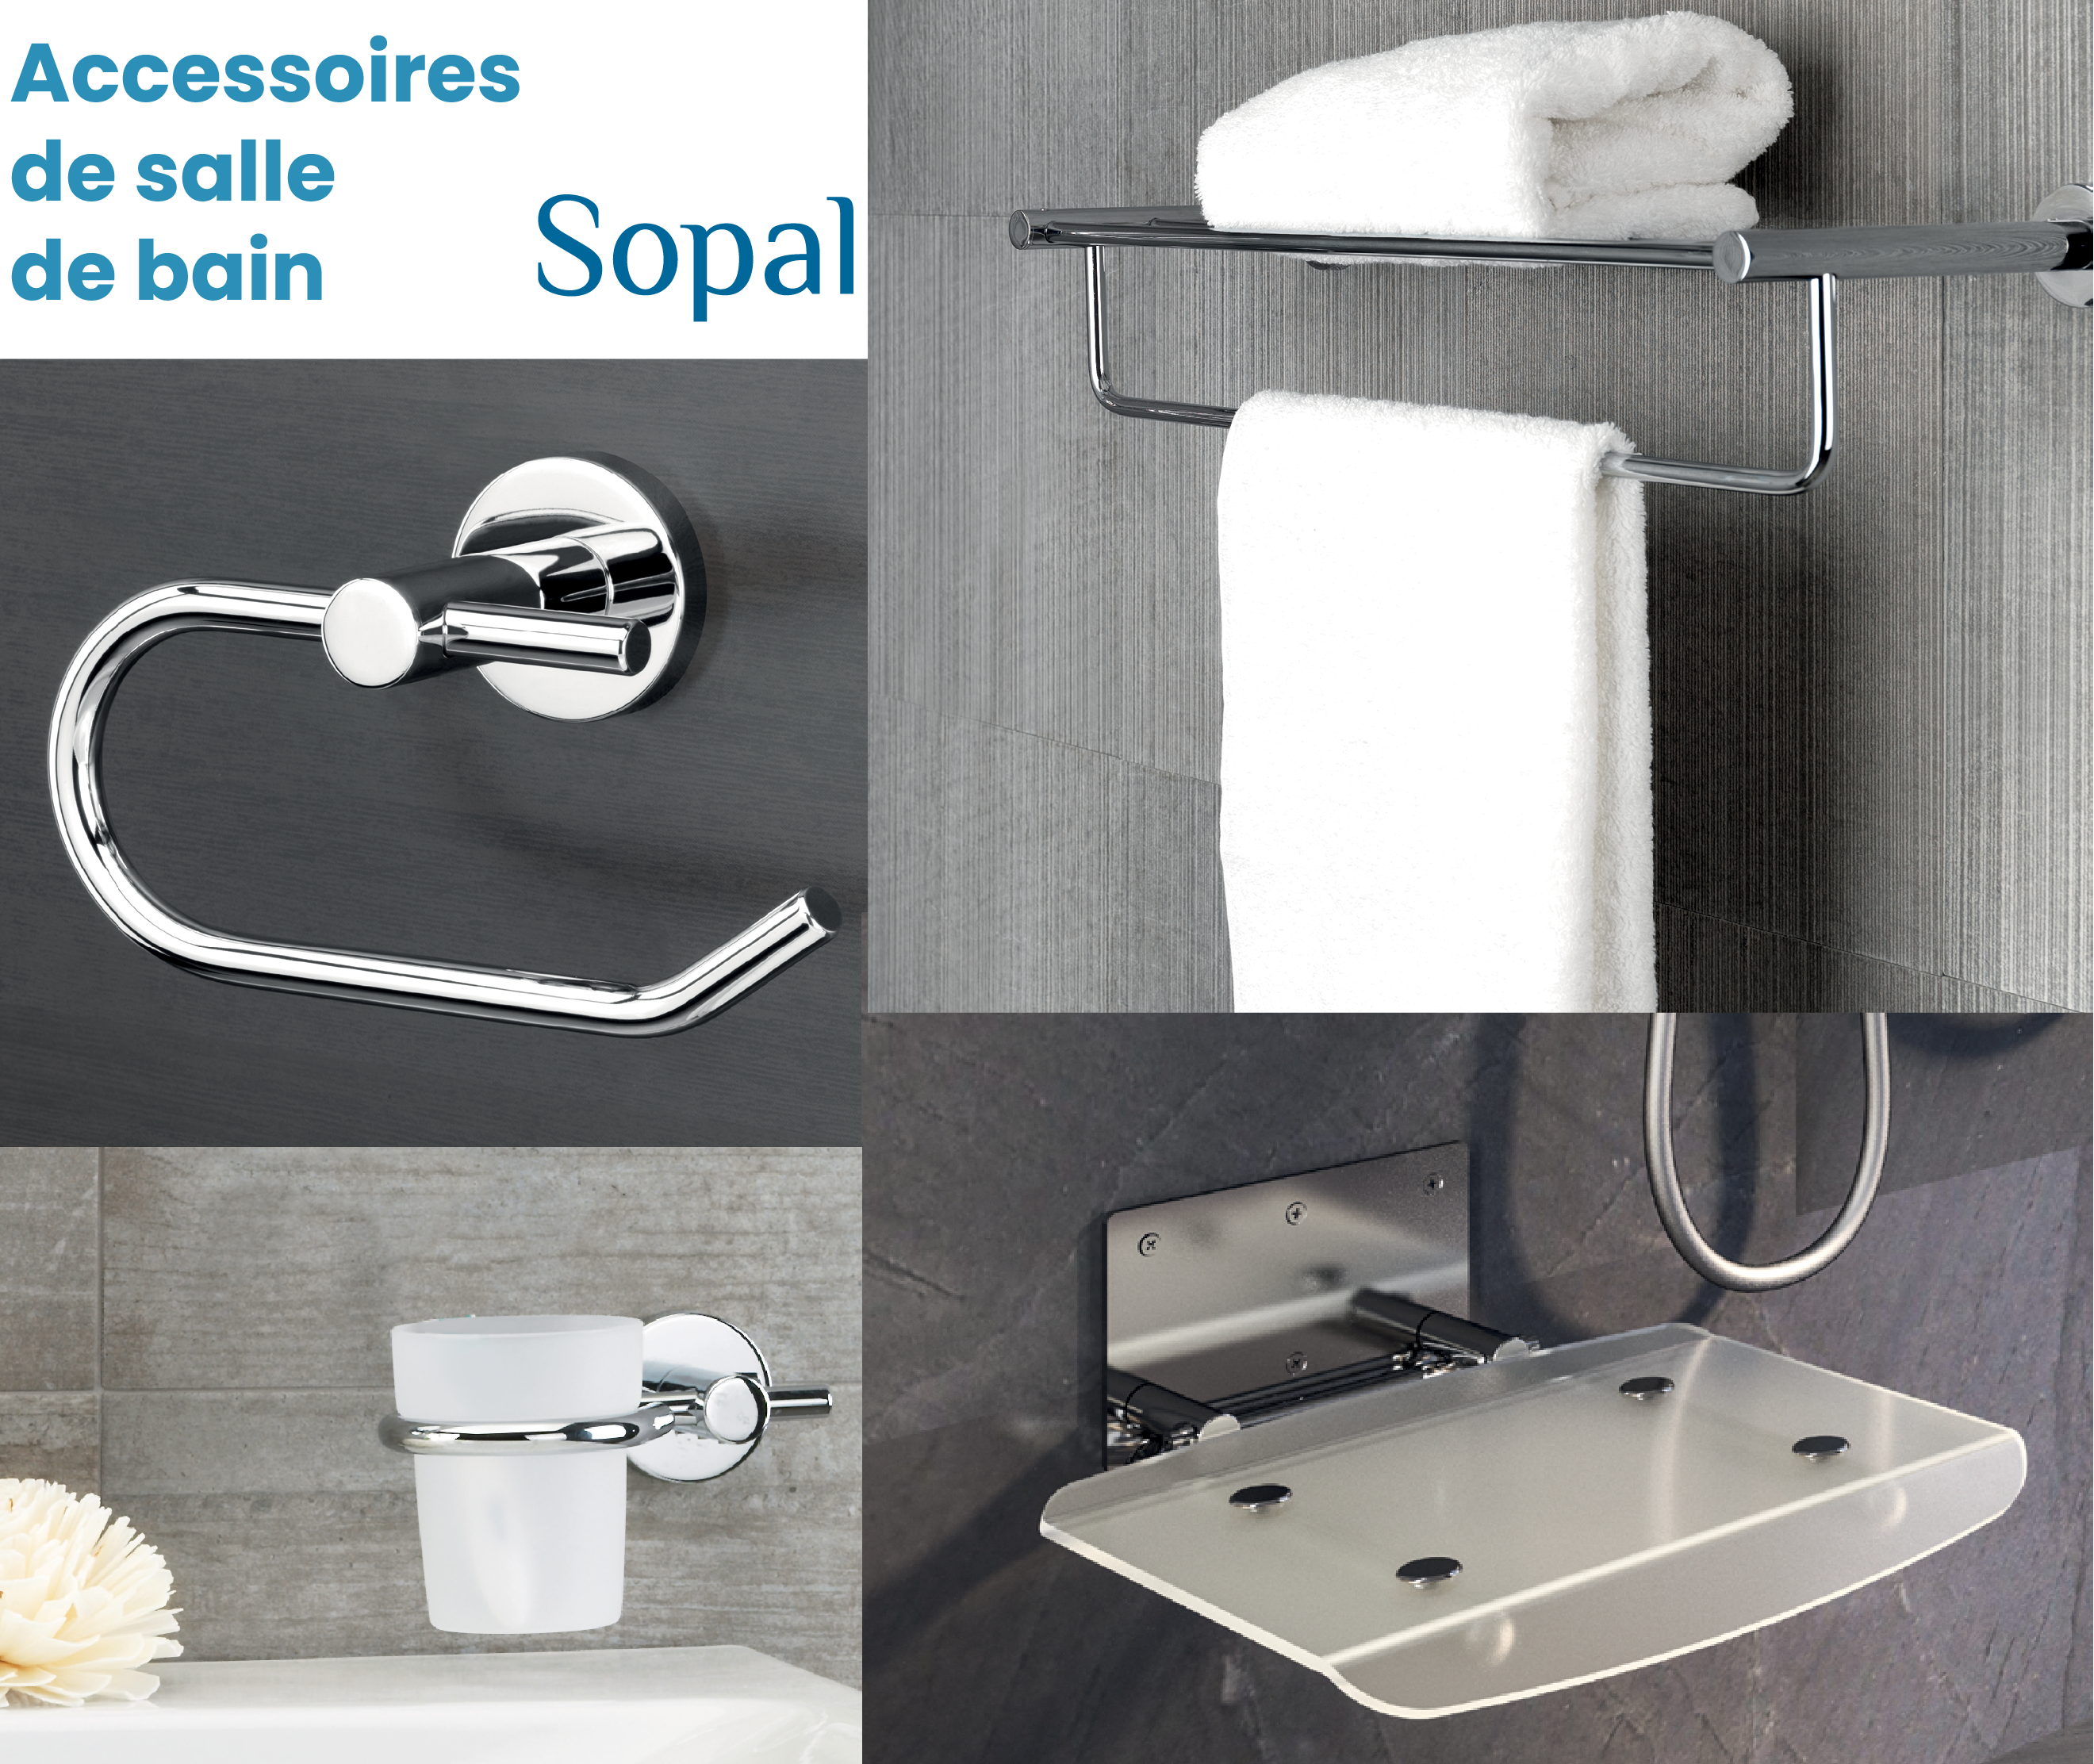 Accessoires de salle de bain Sopal - La Sélection CBK